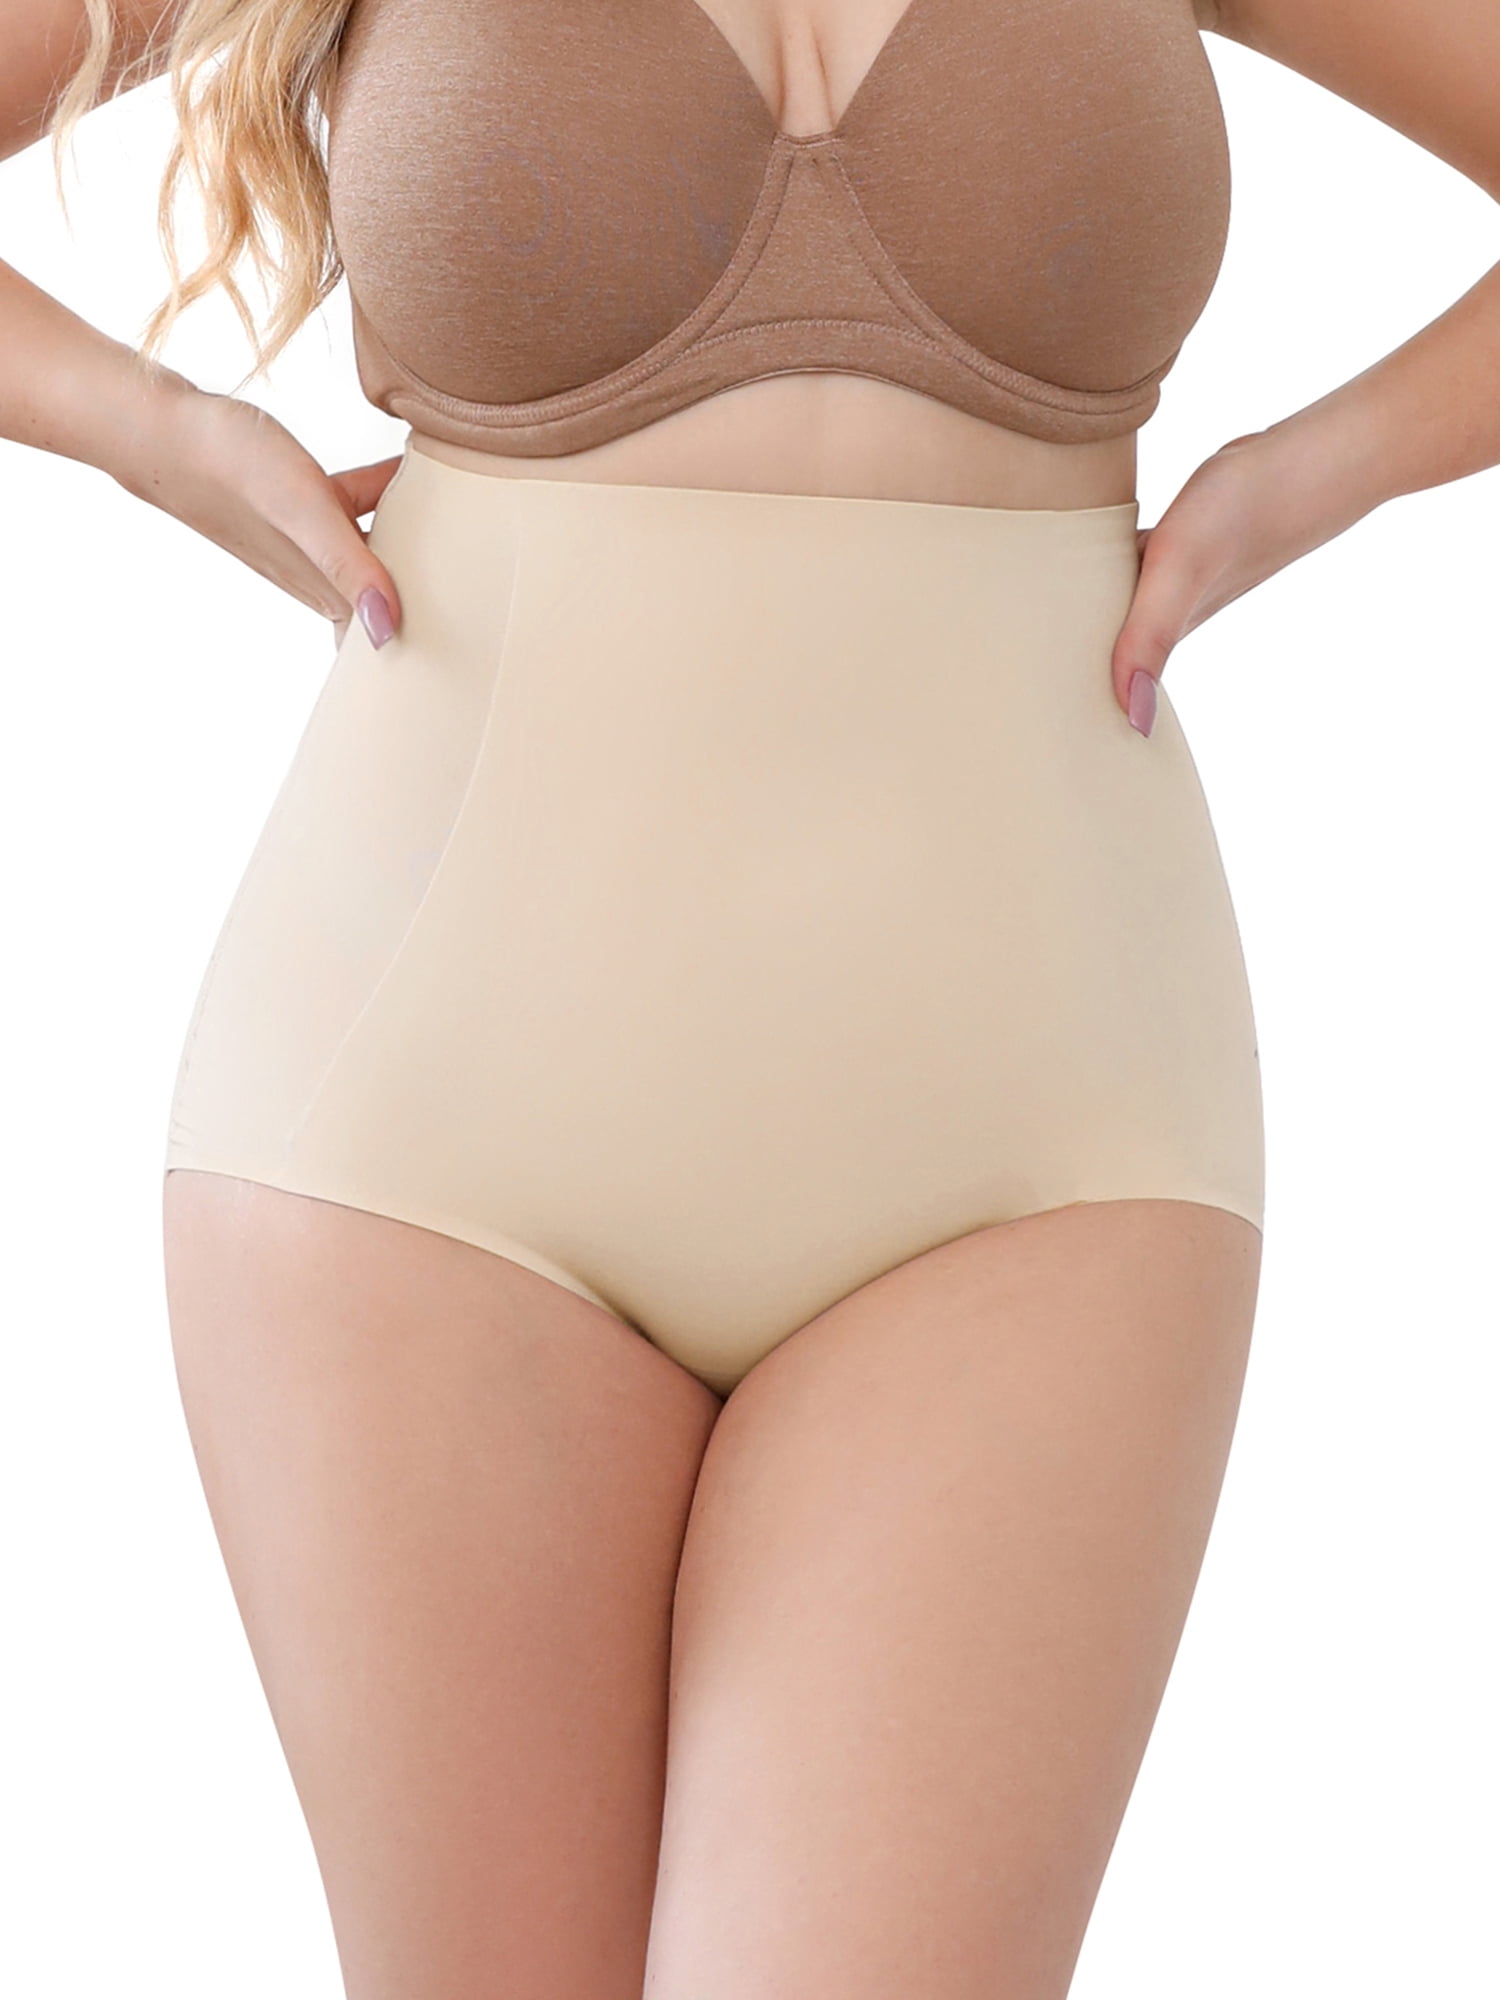  Tummy Control Shapewear High Waist Body Shaper For Women  Tummy Control Stomach Shapewear Extra Firm Girdle